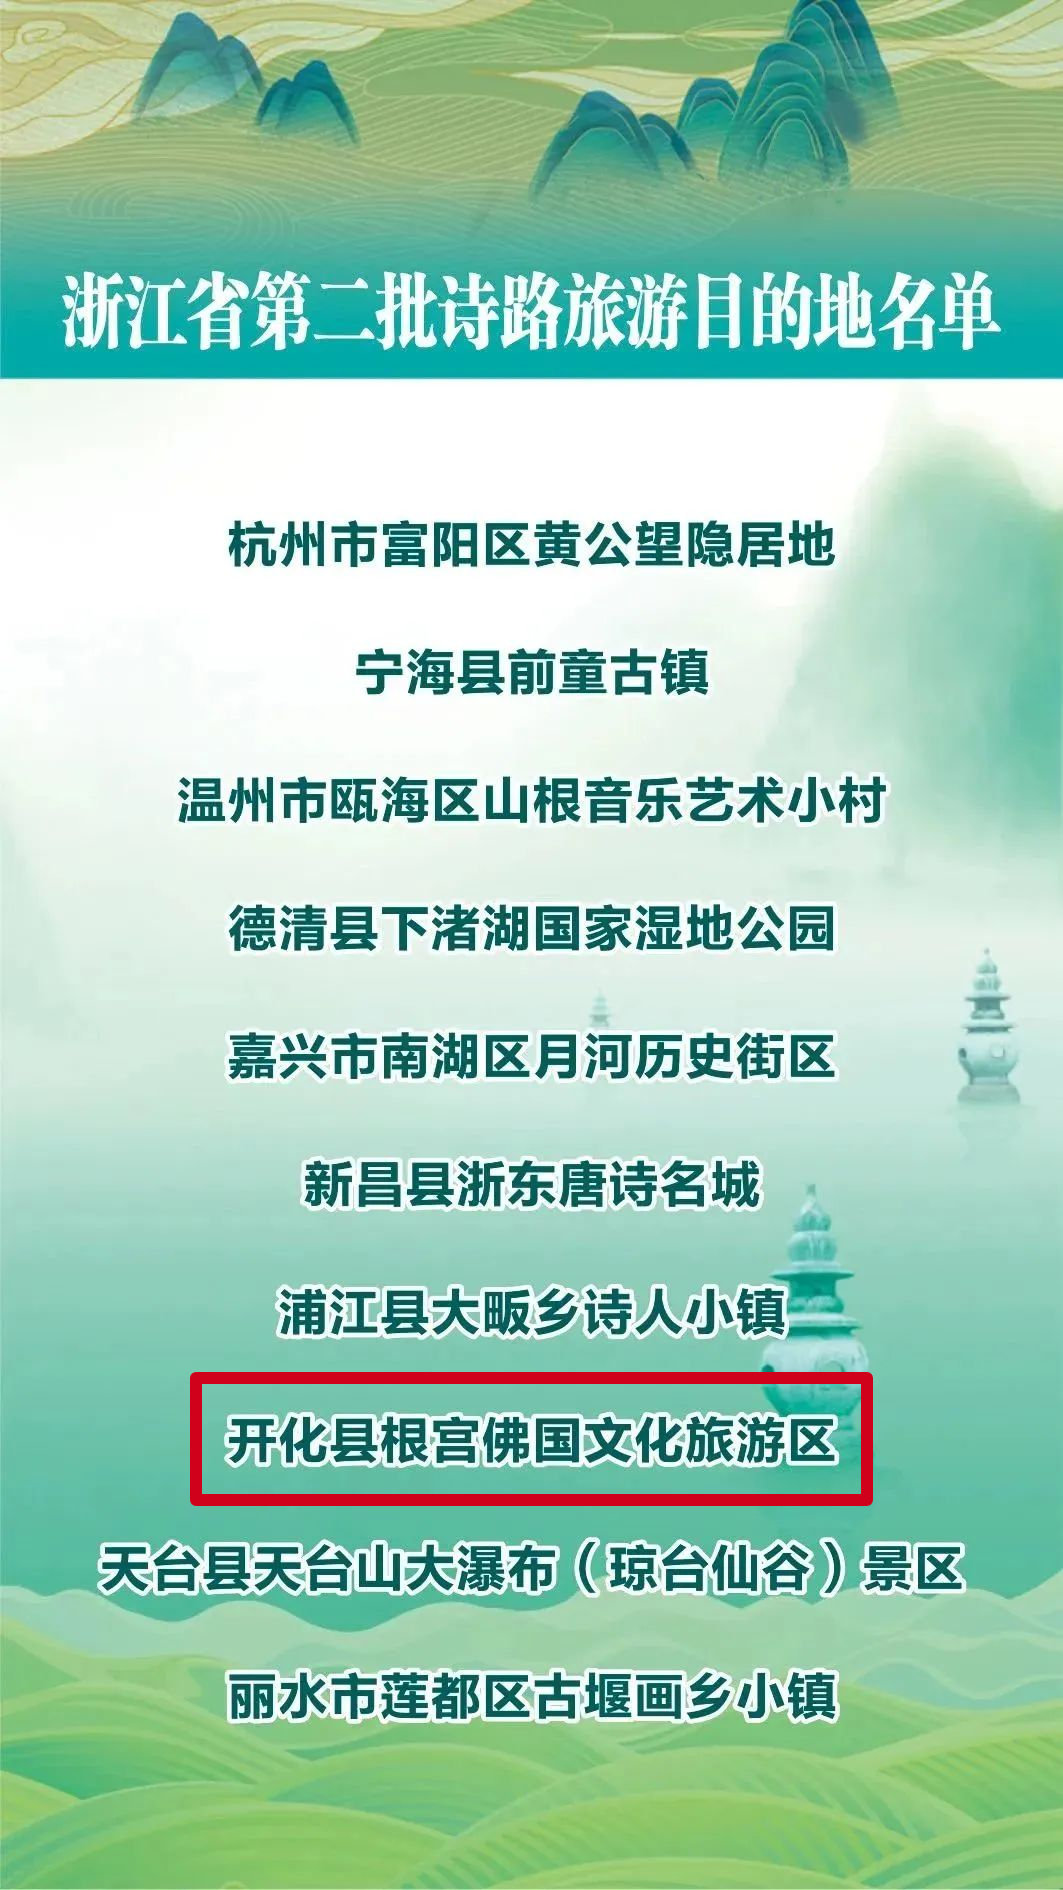 开化根宫佛国文化旅游区入选浙江省第二批诗路旅游目的地名单